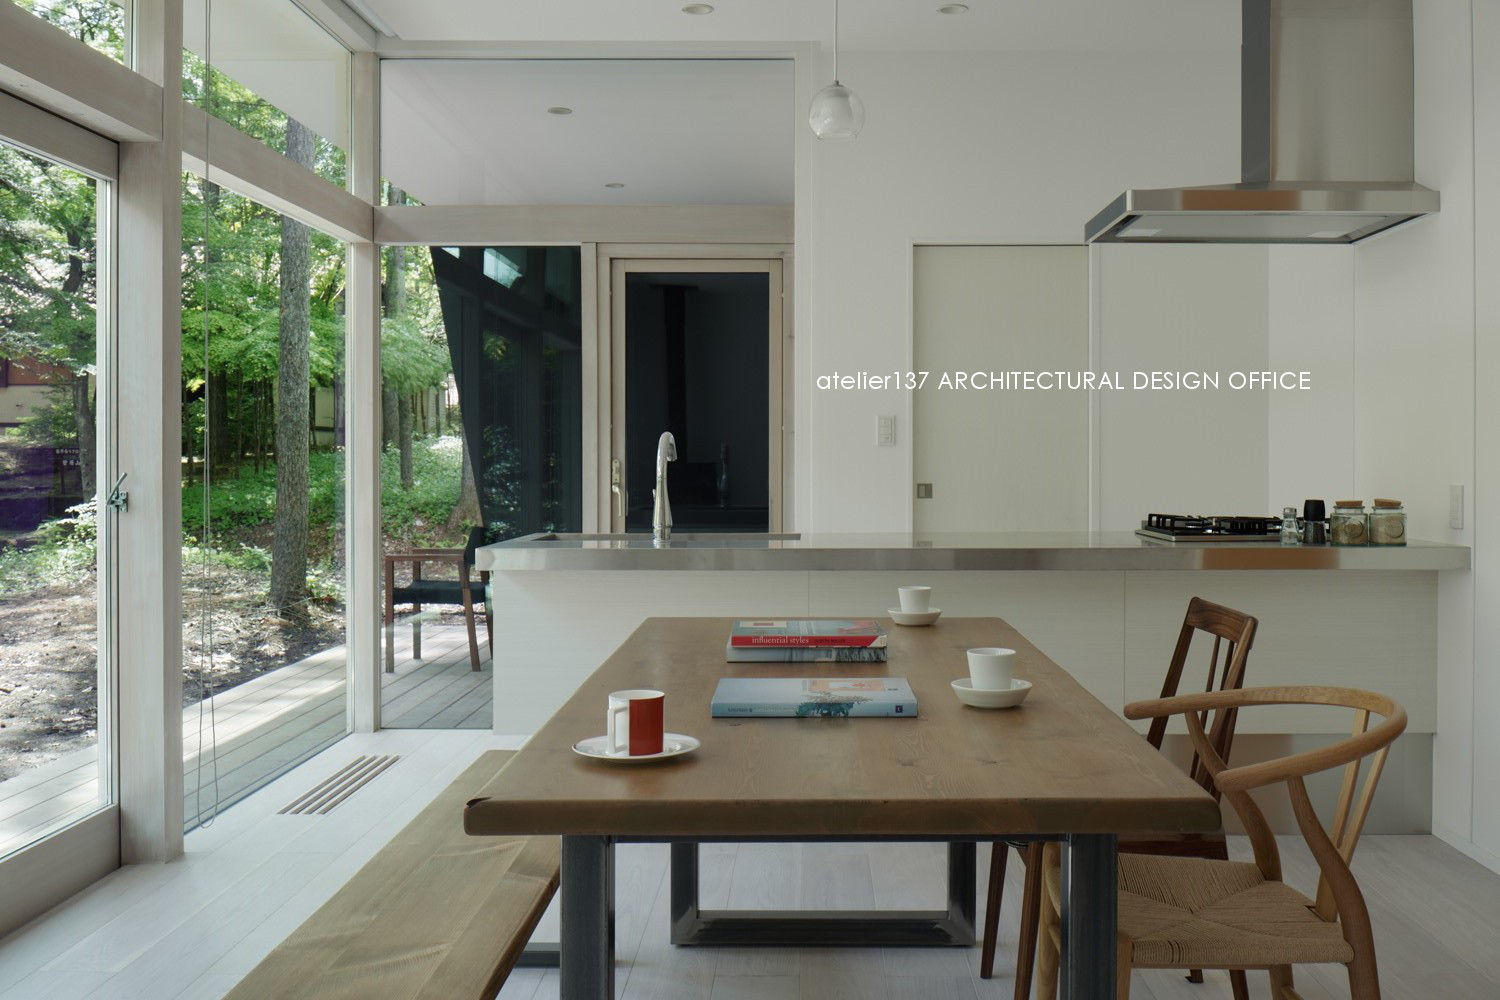 036軽井沢Kさんの家, atelier137 ARCHITECTURAL DESIGN OFFICE atelier137 ARCHITECTURAL DESIGN OFFICE Cocinas modernas